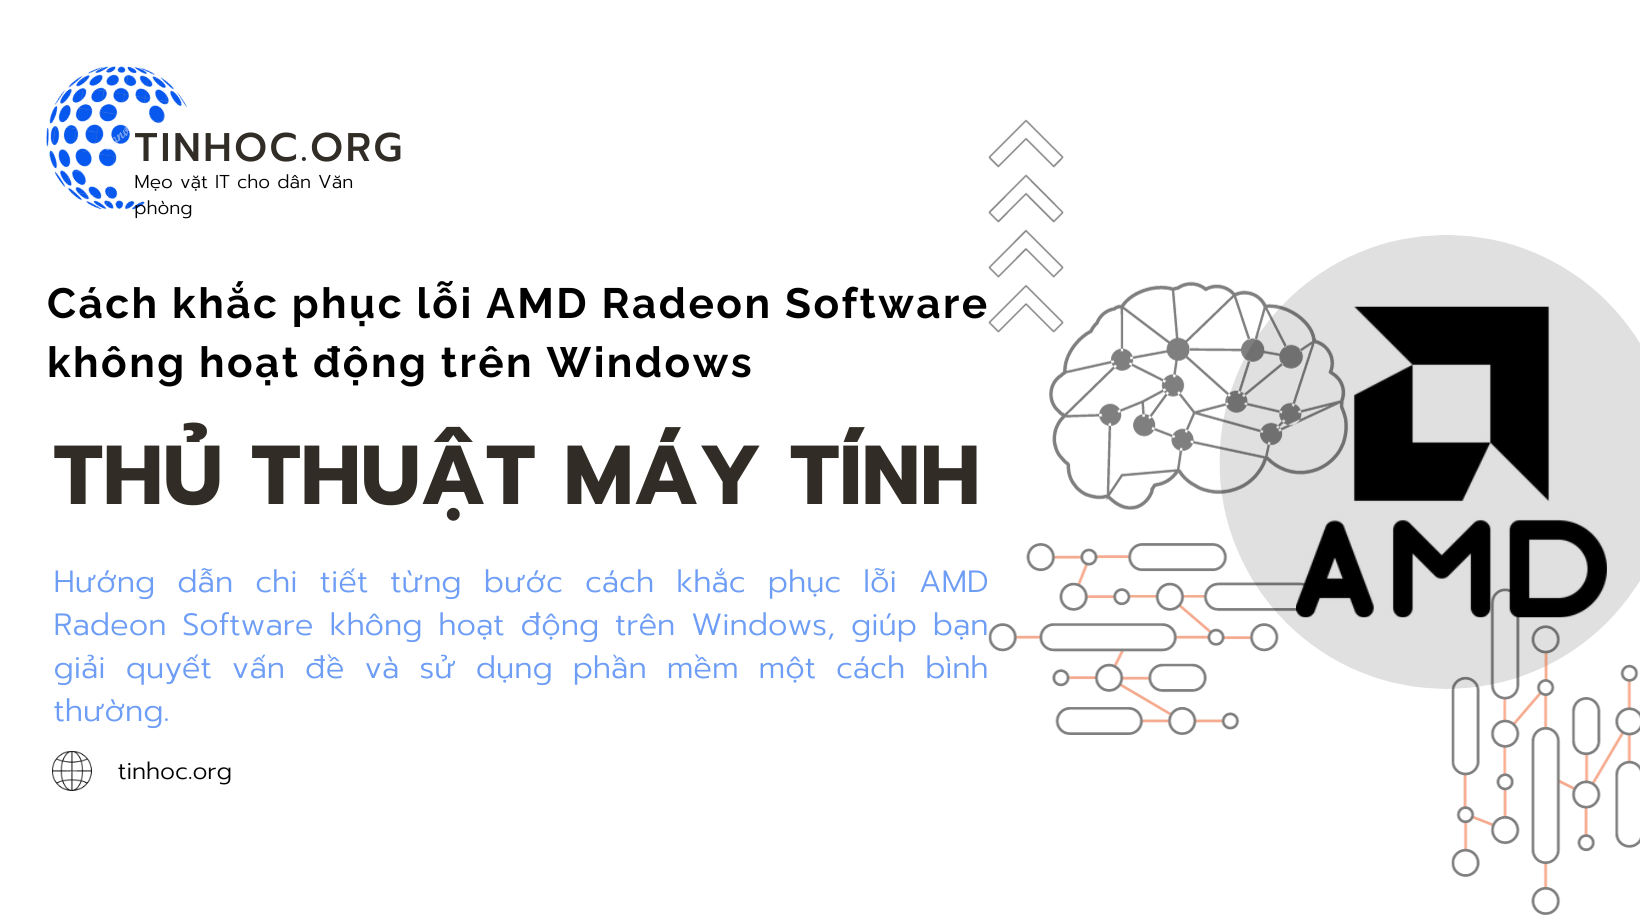 Bằng cách thử các cách khắc phục sự cố được đề cập trong bài viết này, bạn có thể giải quyết được lỗi và sử dụng AMD Radeon Software bình thường.